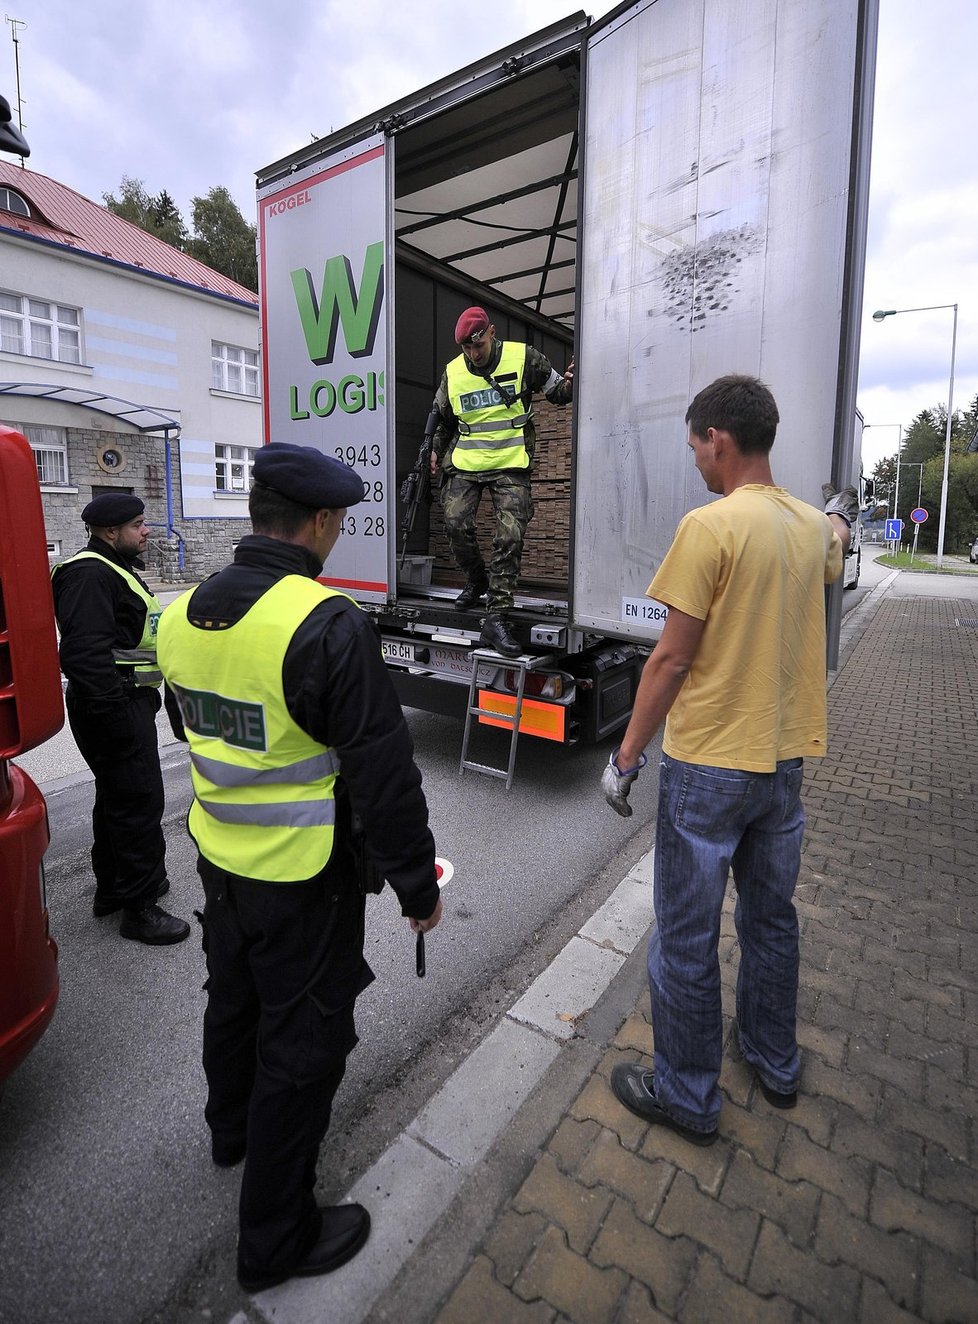 Desítky policistů a vojáků kontrolovaly hraniční přechody do Rakouska v Jihočeském kraji. Cvičení mělo prověřit ochranu hranic při případném zesílení migrační vlny.